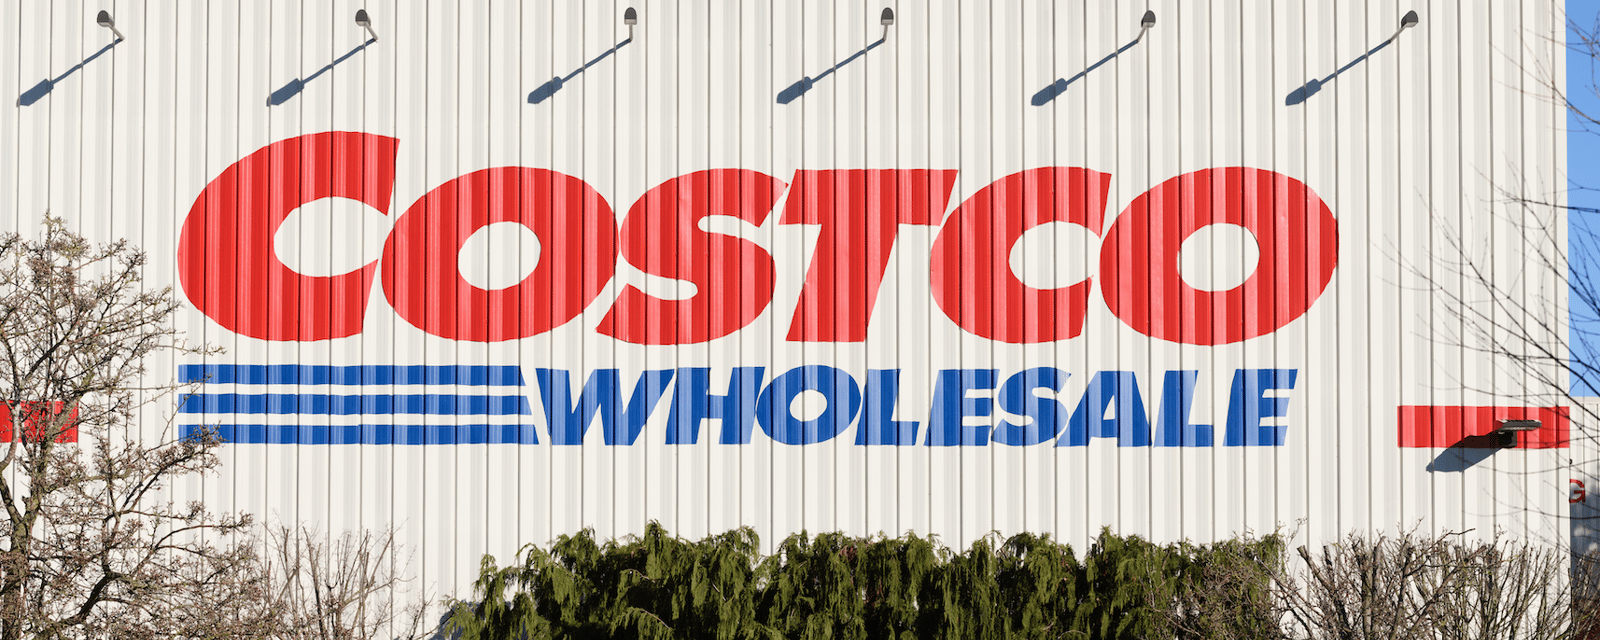 Costco publie des images du premier magasin qui a ouvert en 1983